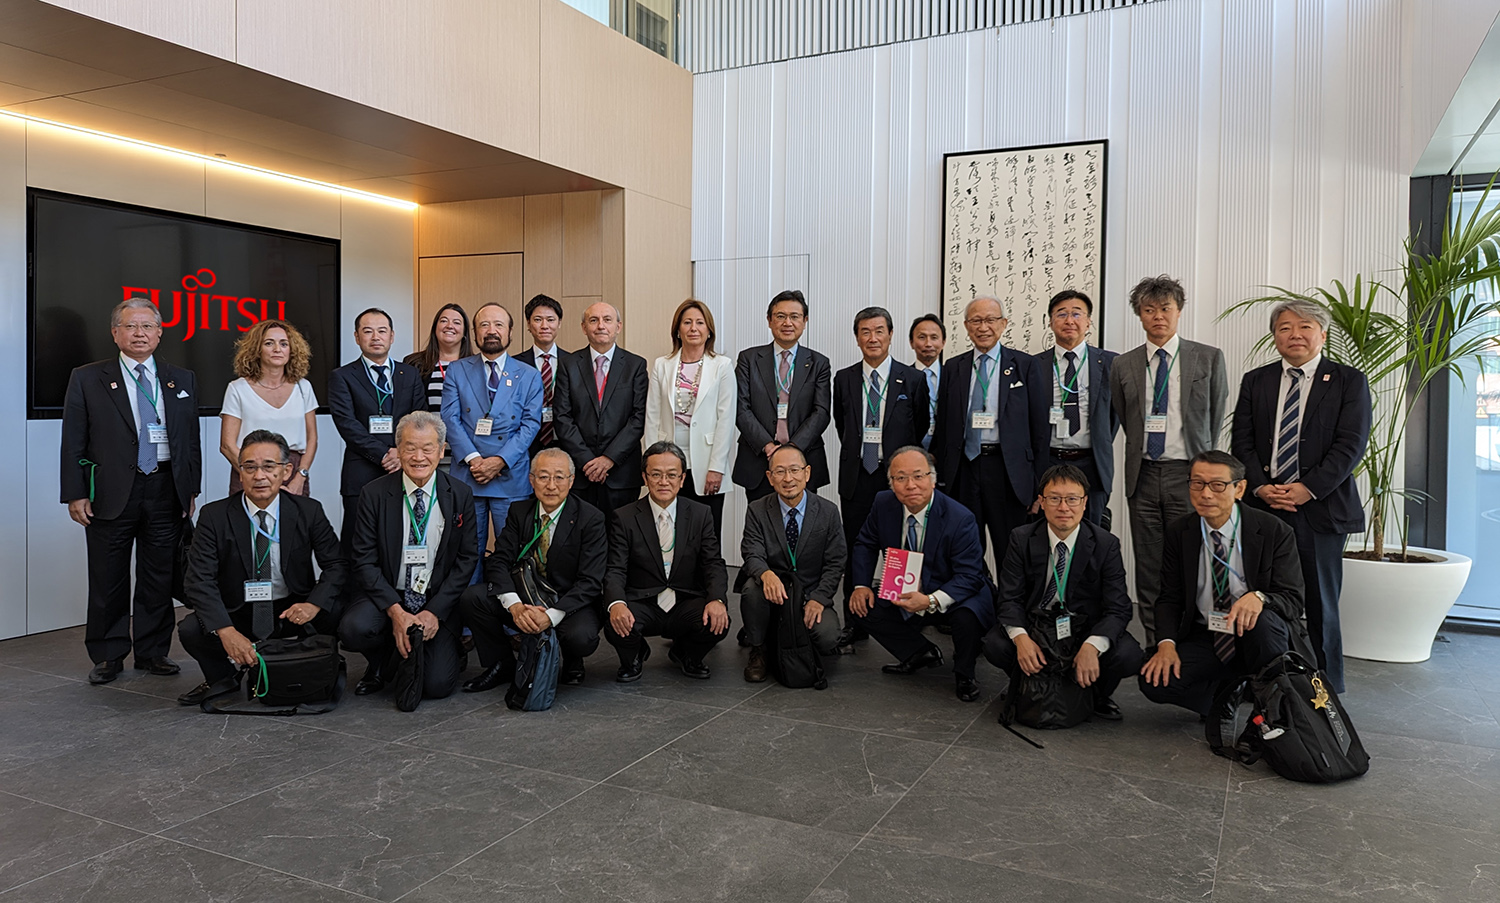 Visita de la Asociación de Empresas Industriales de Kioto a la sede de Fujitsu en Madrid